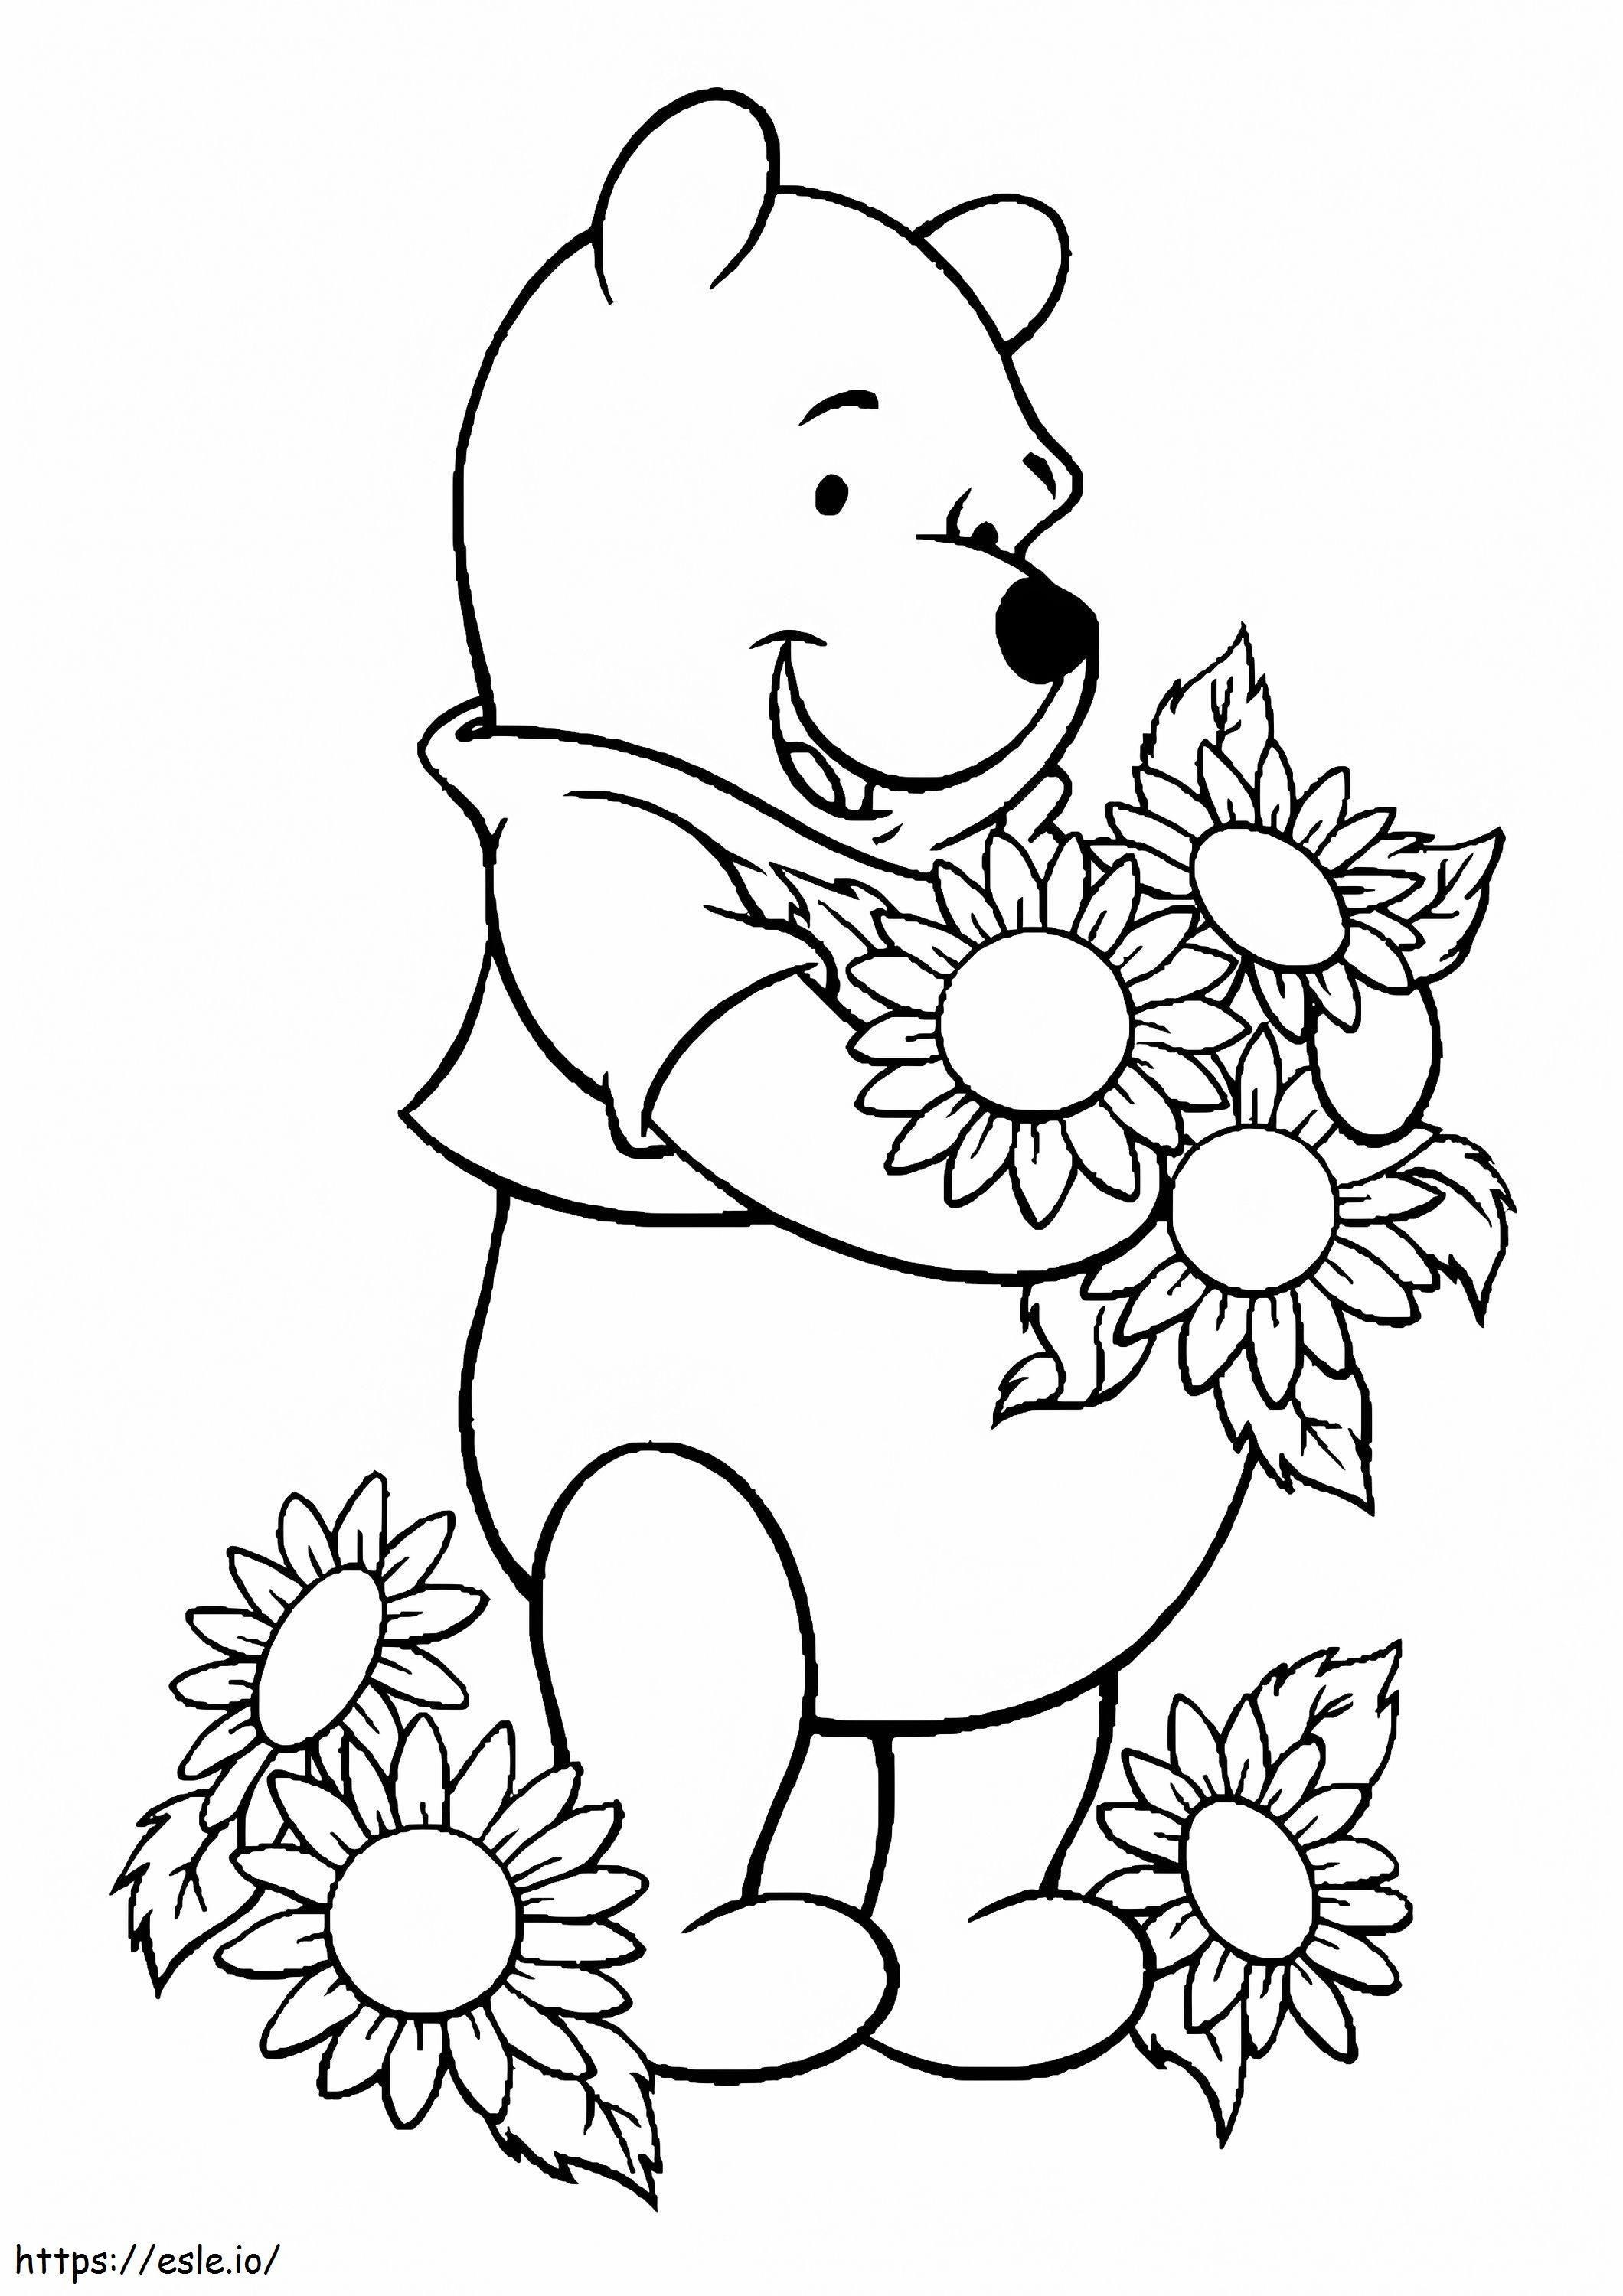 1526549763 Pooh ama las flores1 A4 para colorear